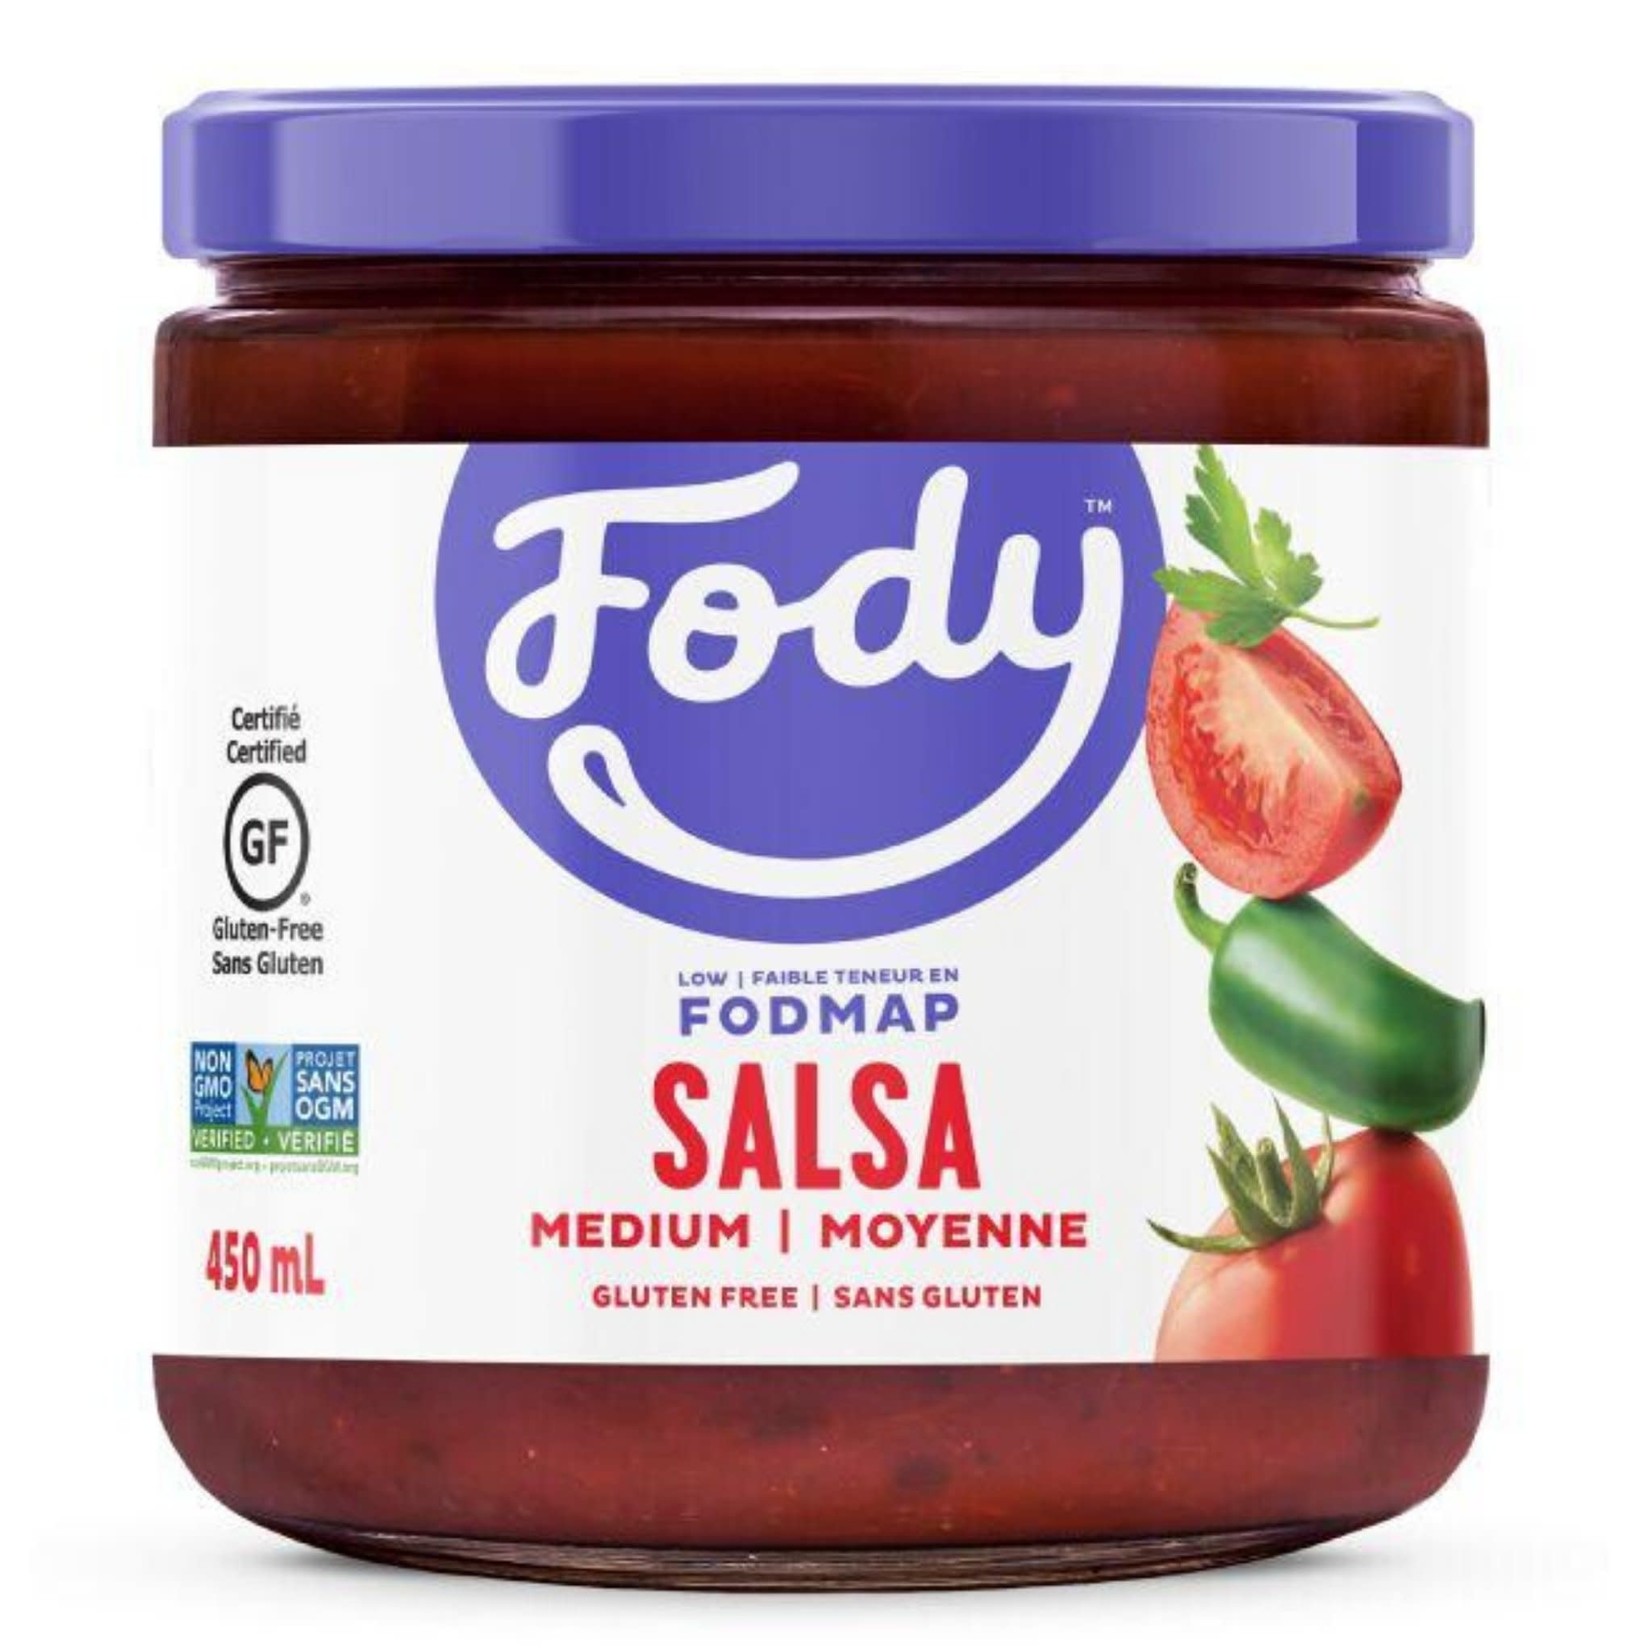 Fody Food Co. Fody Medium Salsa 450ml